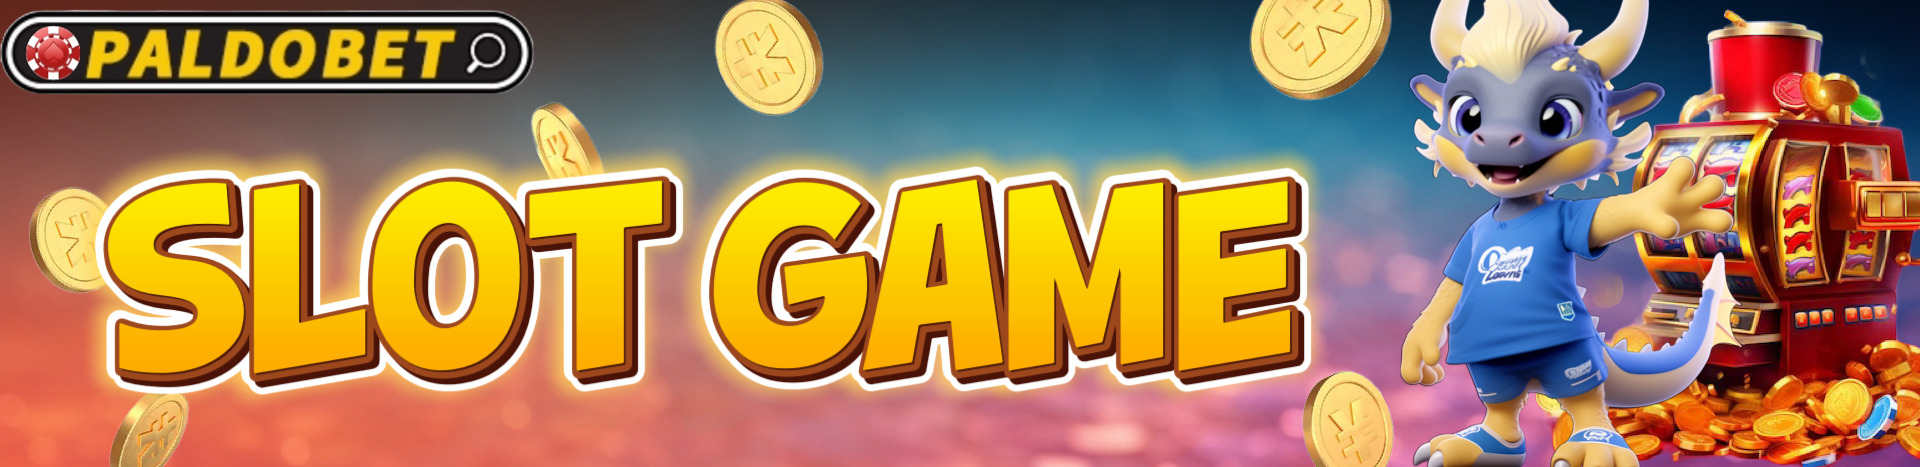 paldobet_slot-games_banner